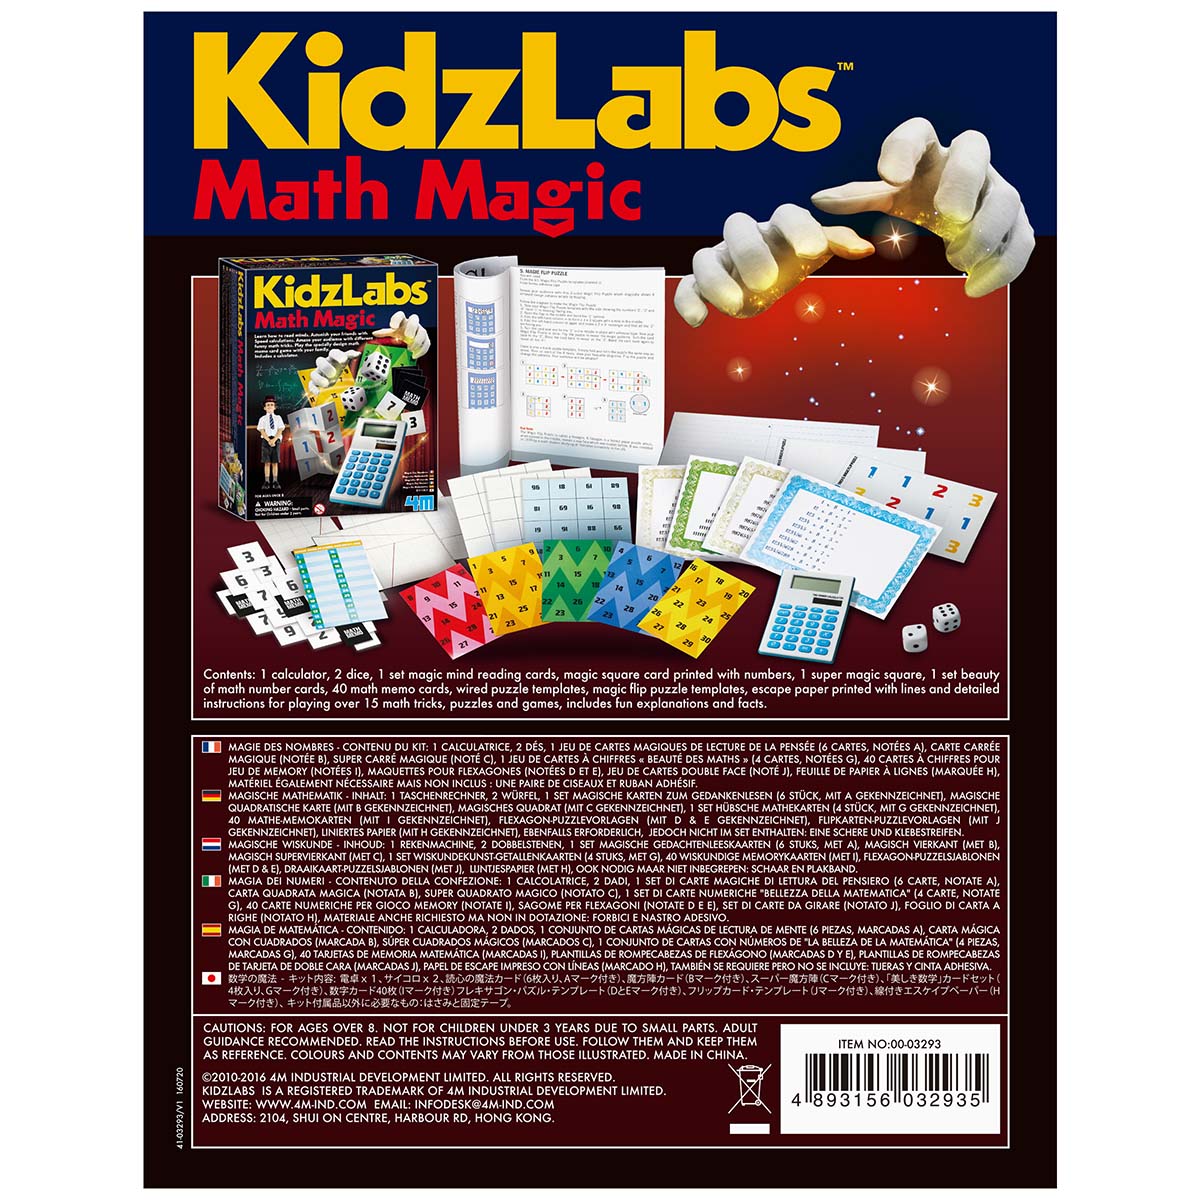 KidzLabs: Math Magic